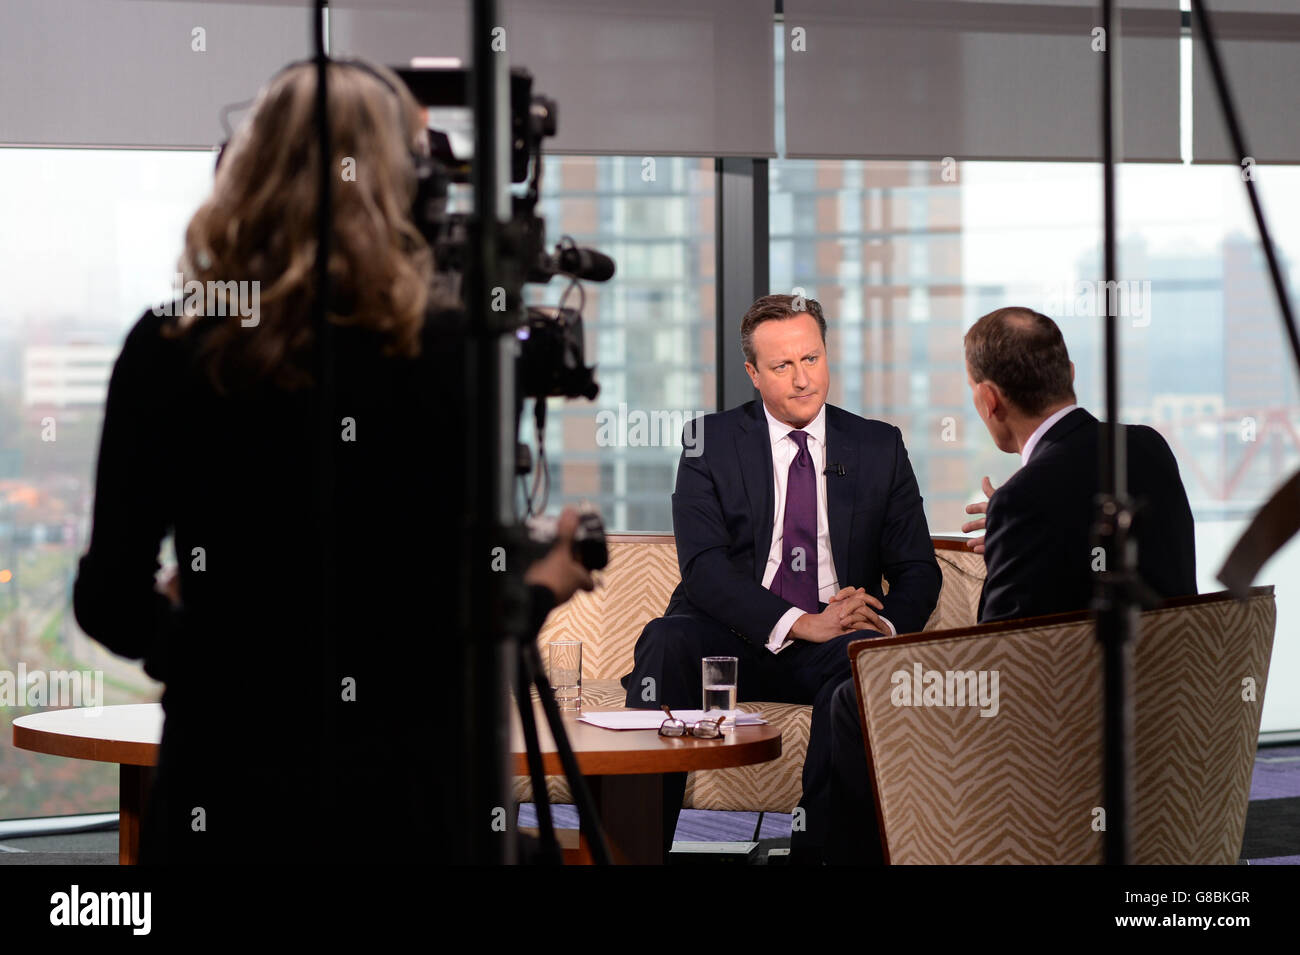 Le Premier ministre David Cameron est interviewé par Andrew Marr (à droite) sur son programme d'affaires courantes BBC1 à Media City à Manchester, avant le début de la conférence annuelle du Parti conservateur. Banque D'Images